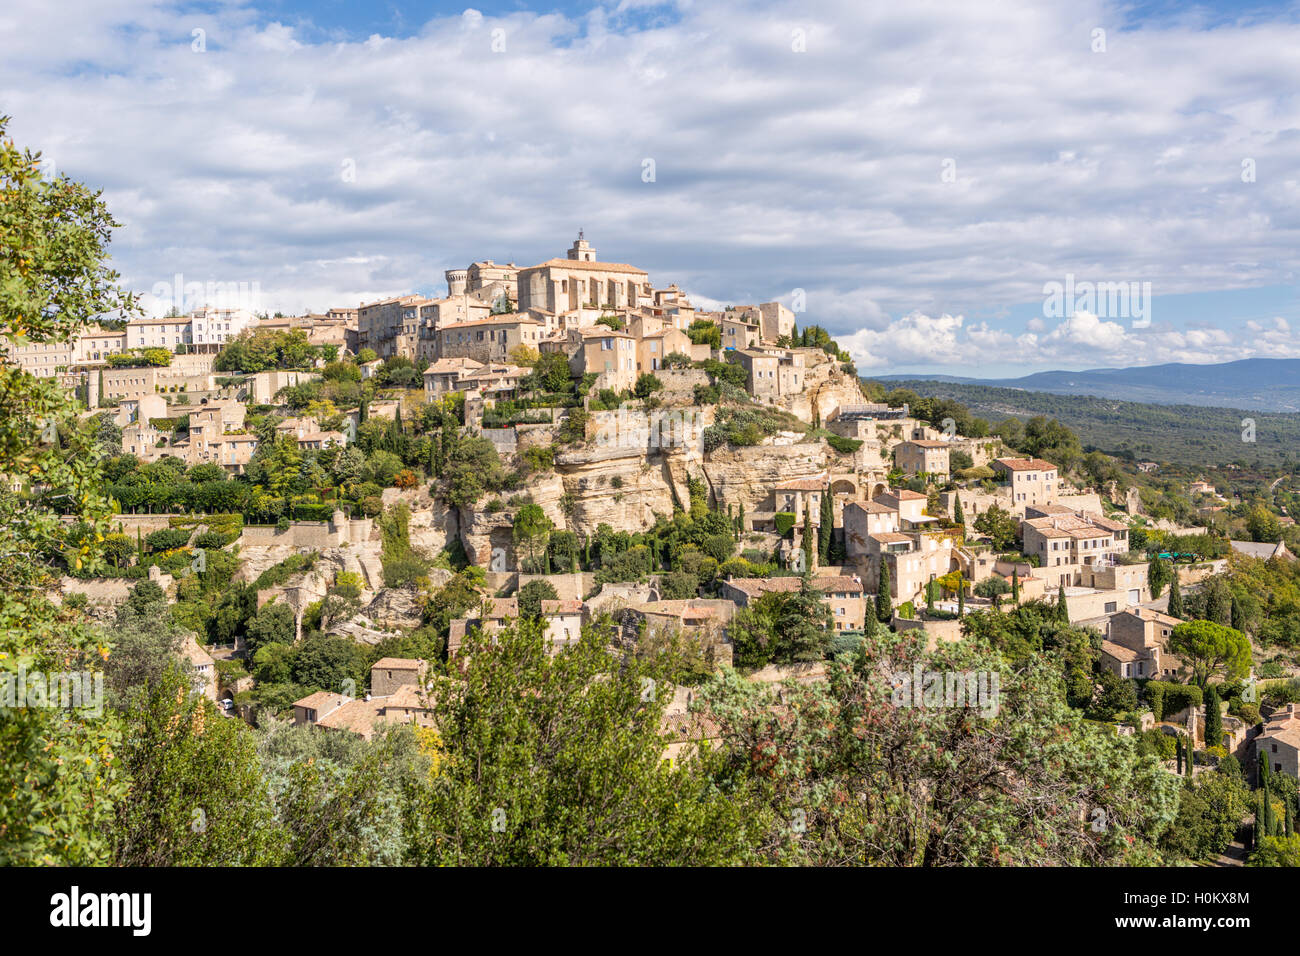 Long View de hill ville de Gordes, Luberon, Provence, France Banque D'Images